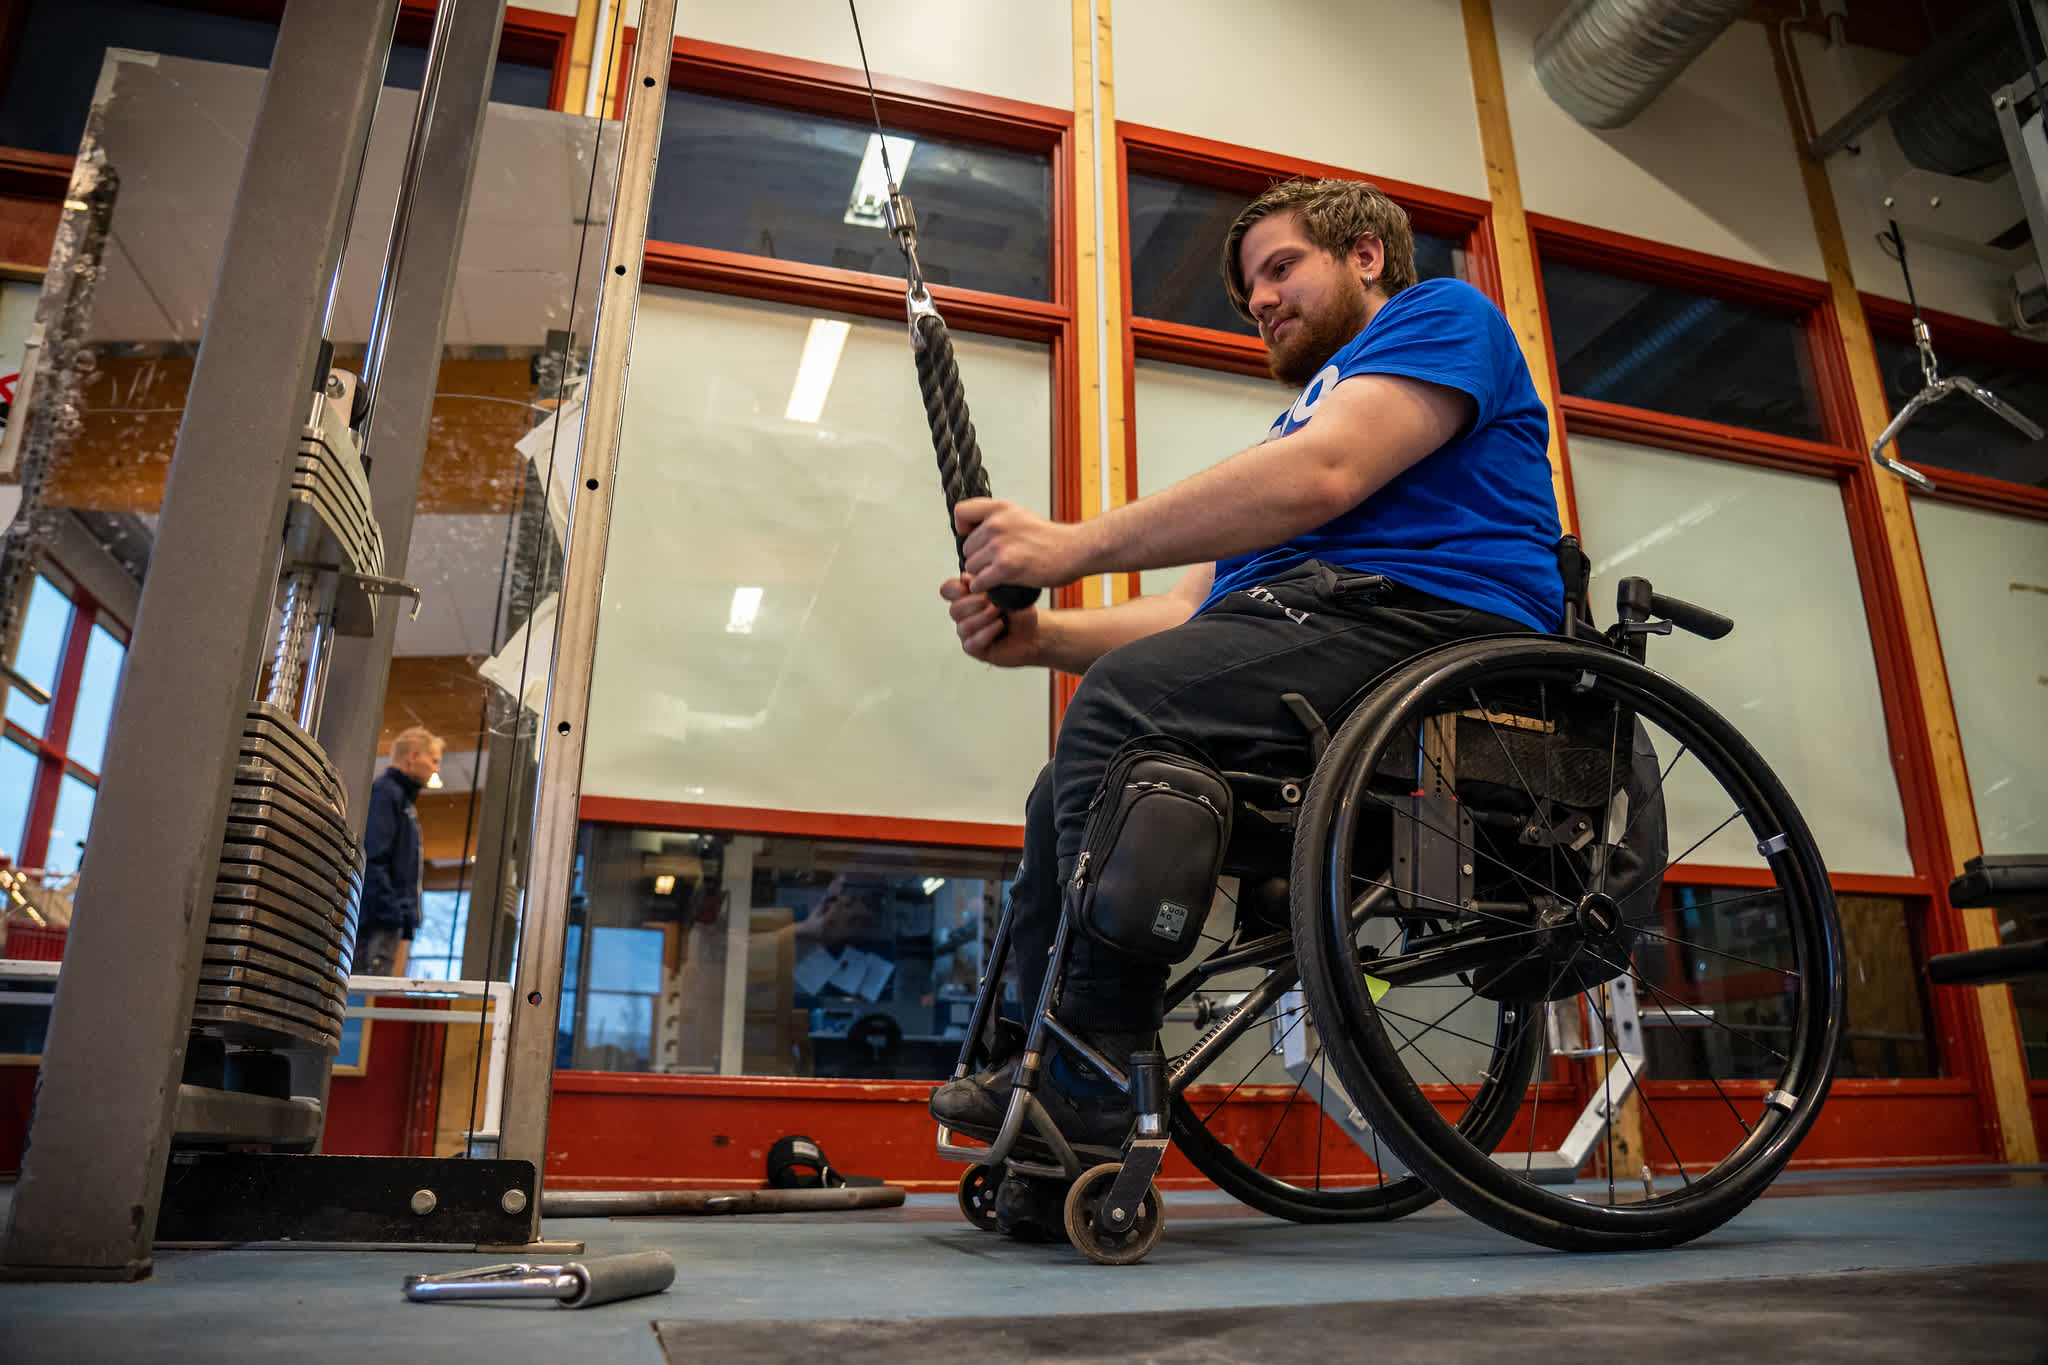 Man använder en stakmaskin på ett gym, sittande i rullstol.